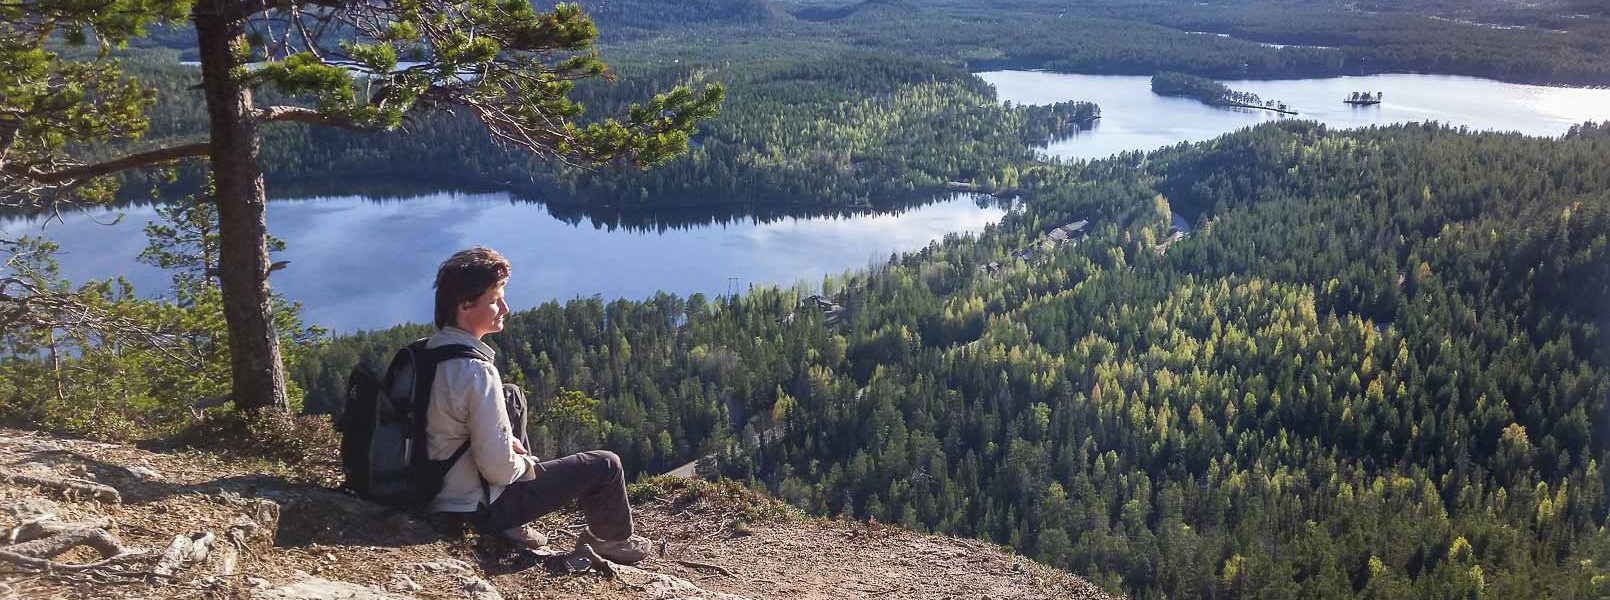 Finnish Nature nuorisokeskusyhdistys